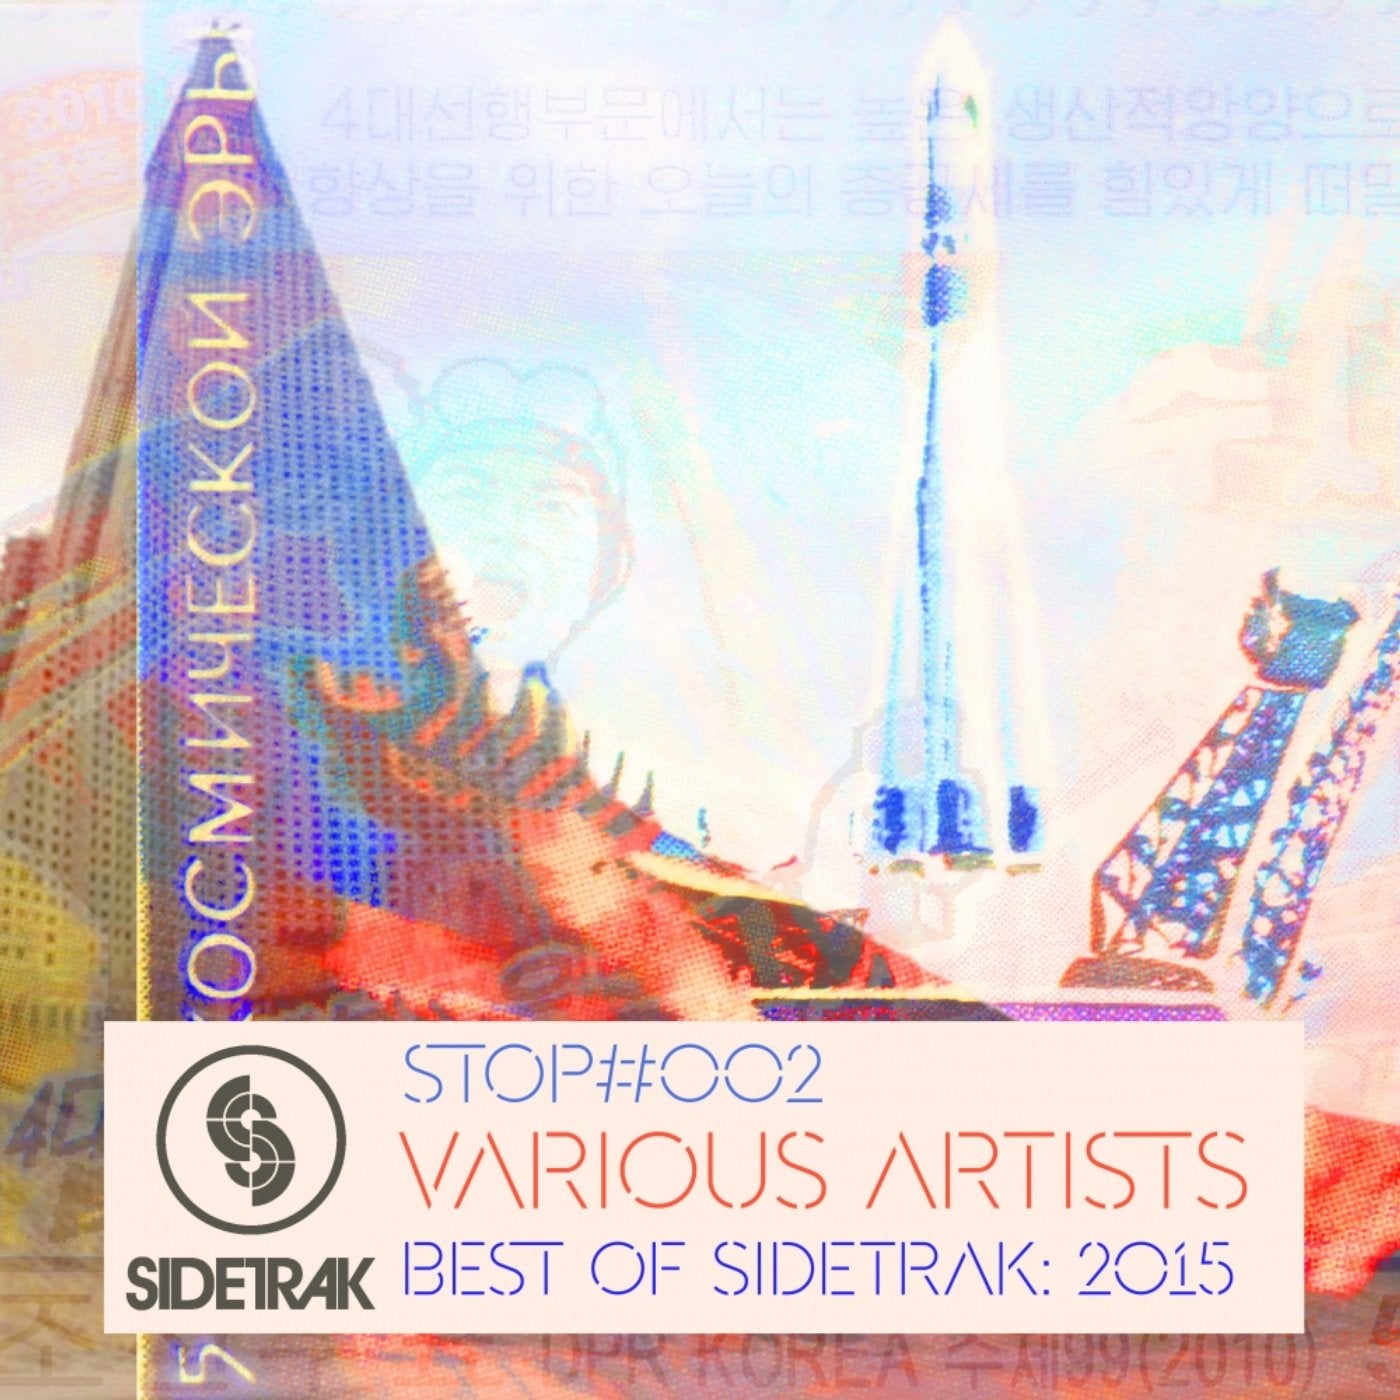 Best of Sidetrak: 2015